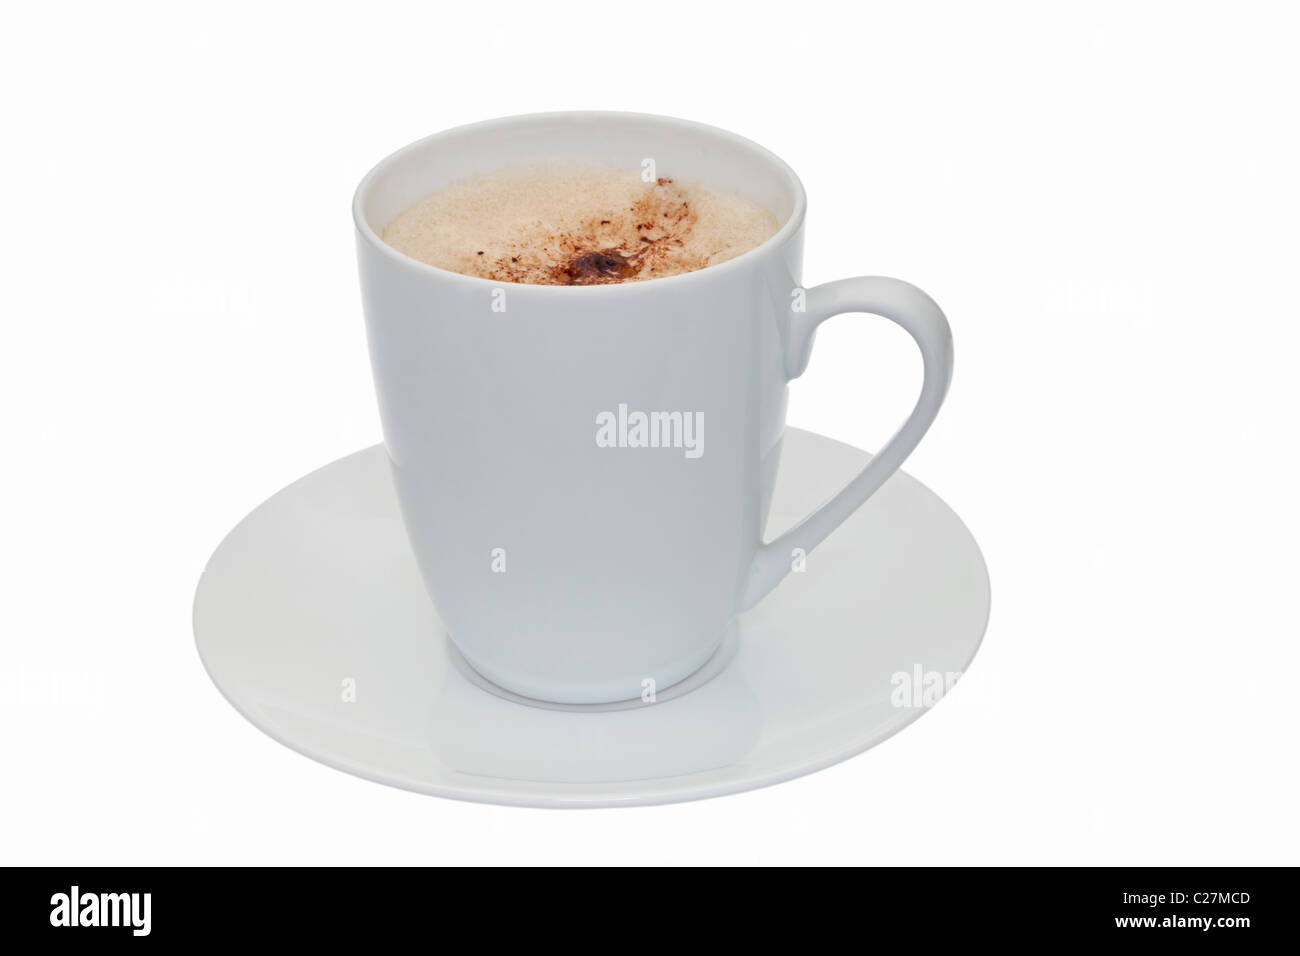 Une tasse de café mousseux dans une tasse et soucoupe blanc isolé sur fond blanc Banque D'Images